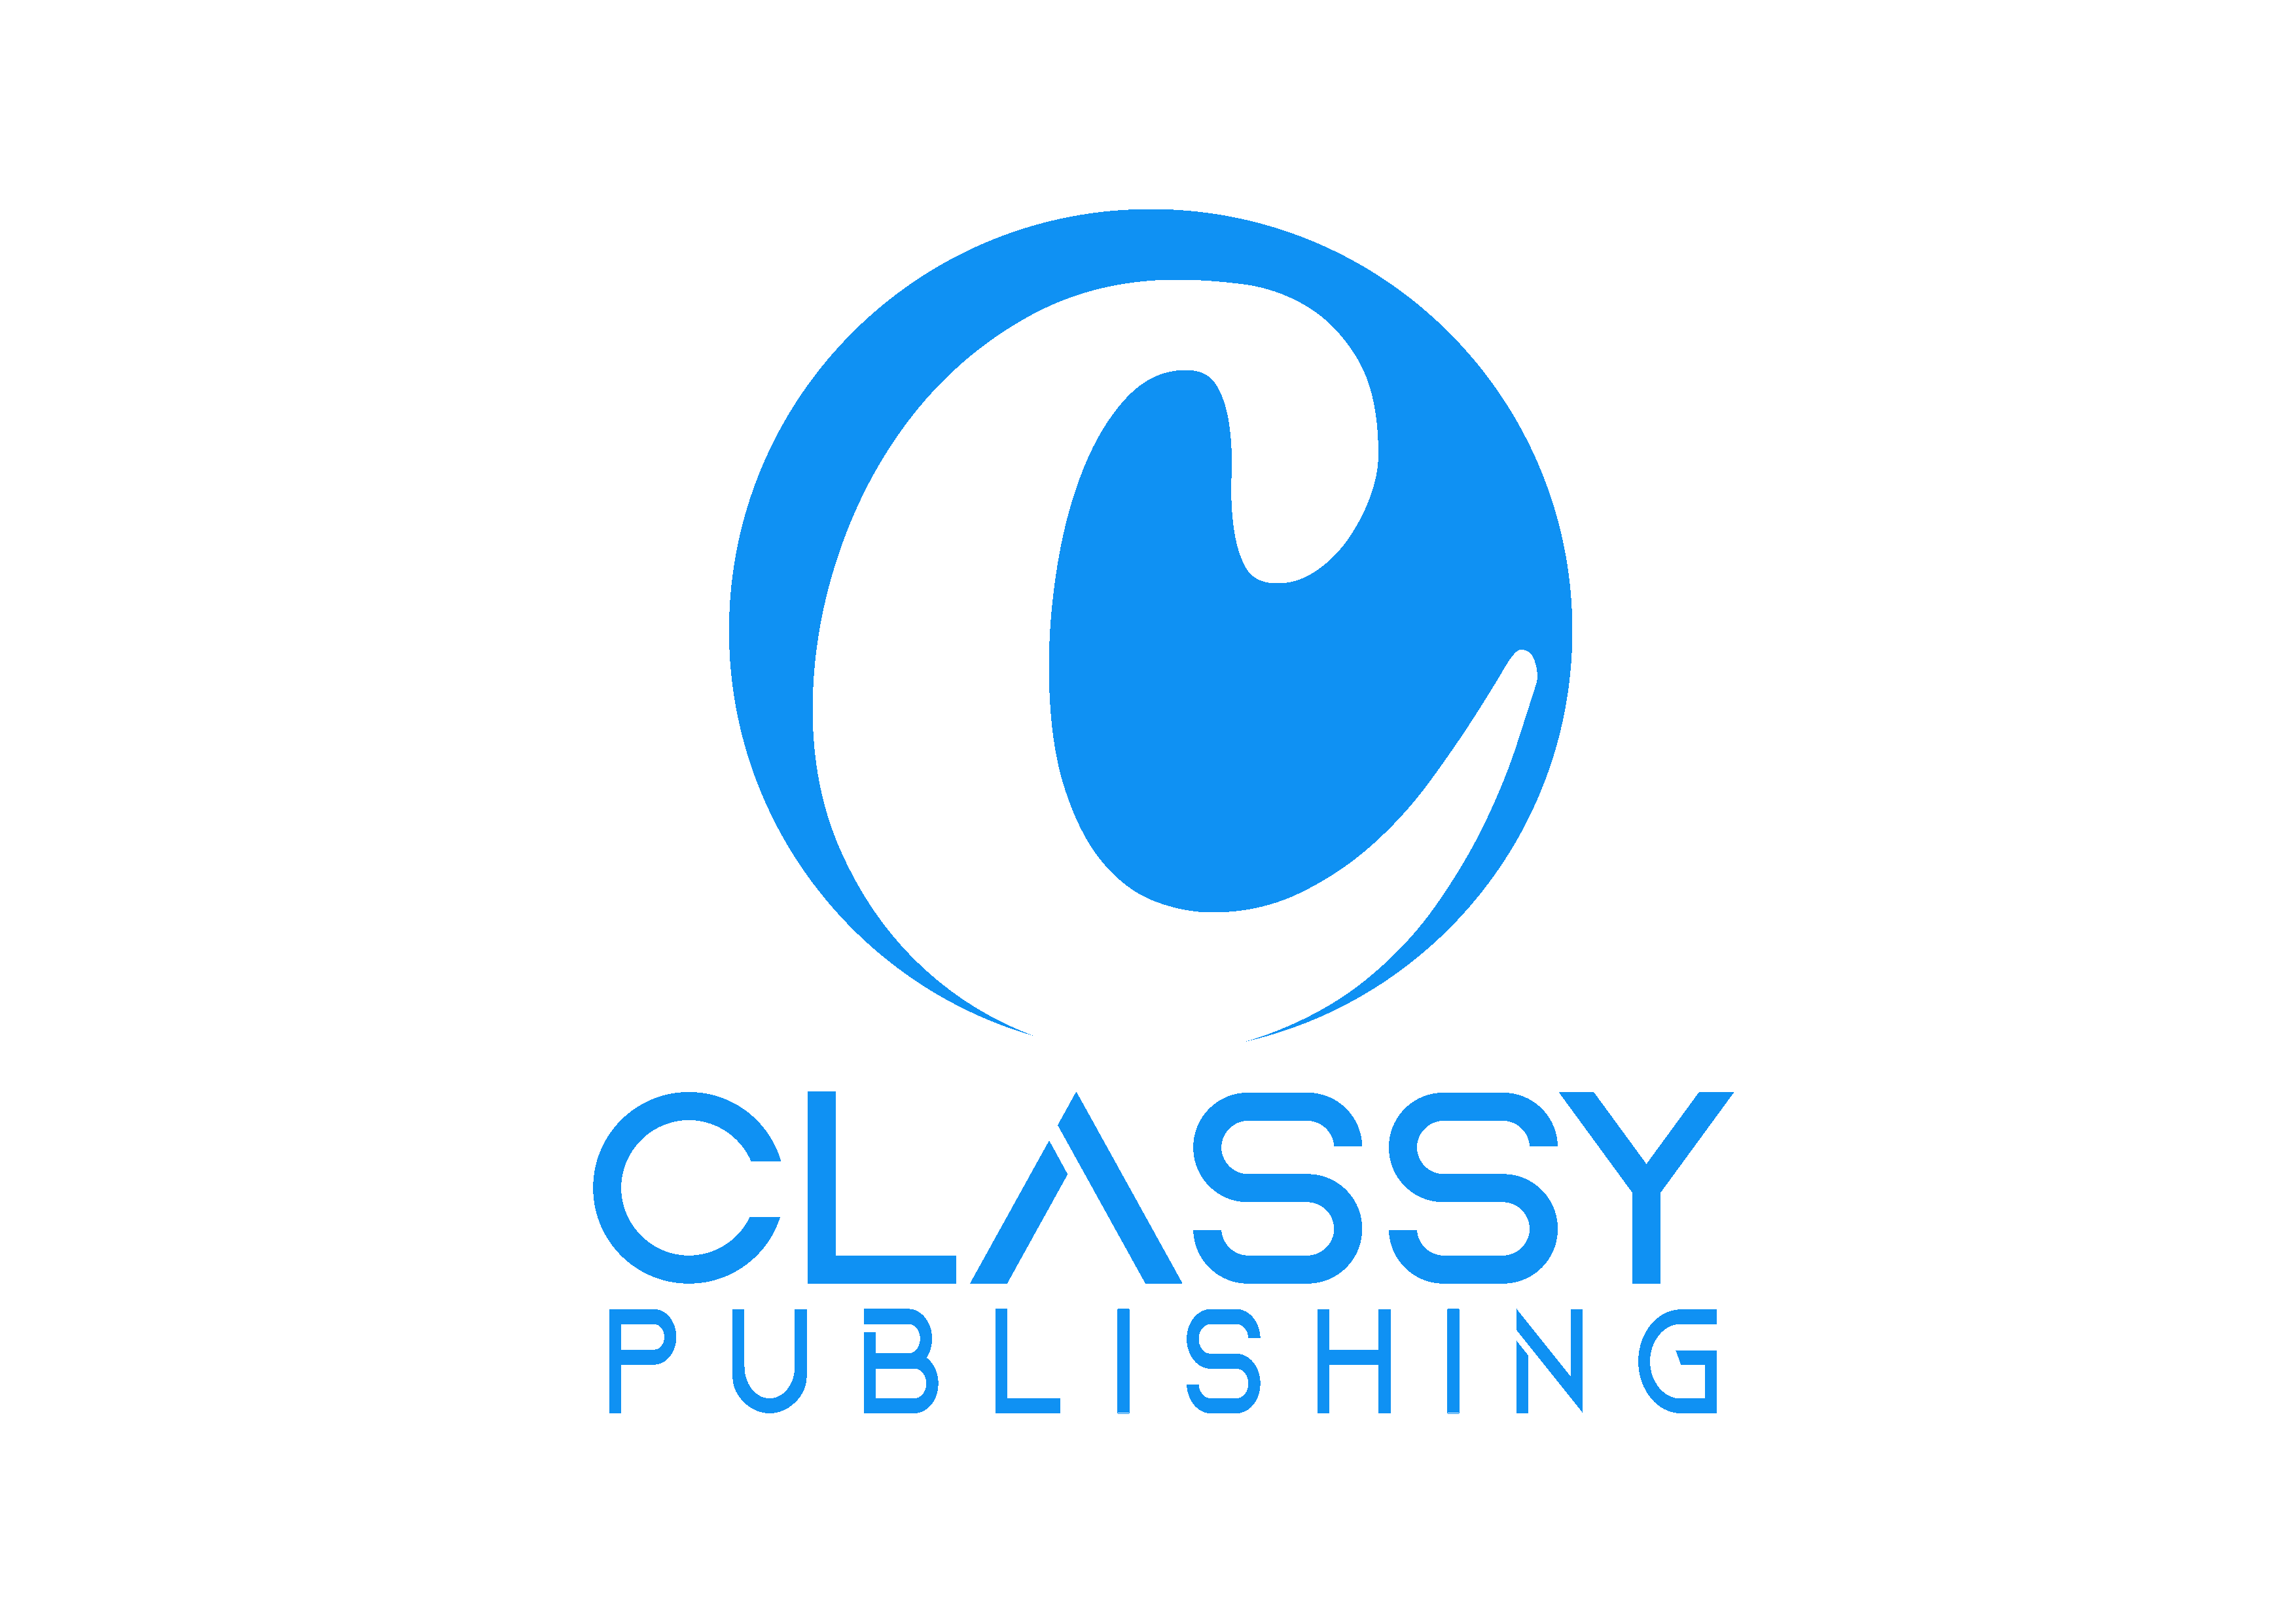 Classy Publishing